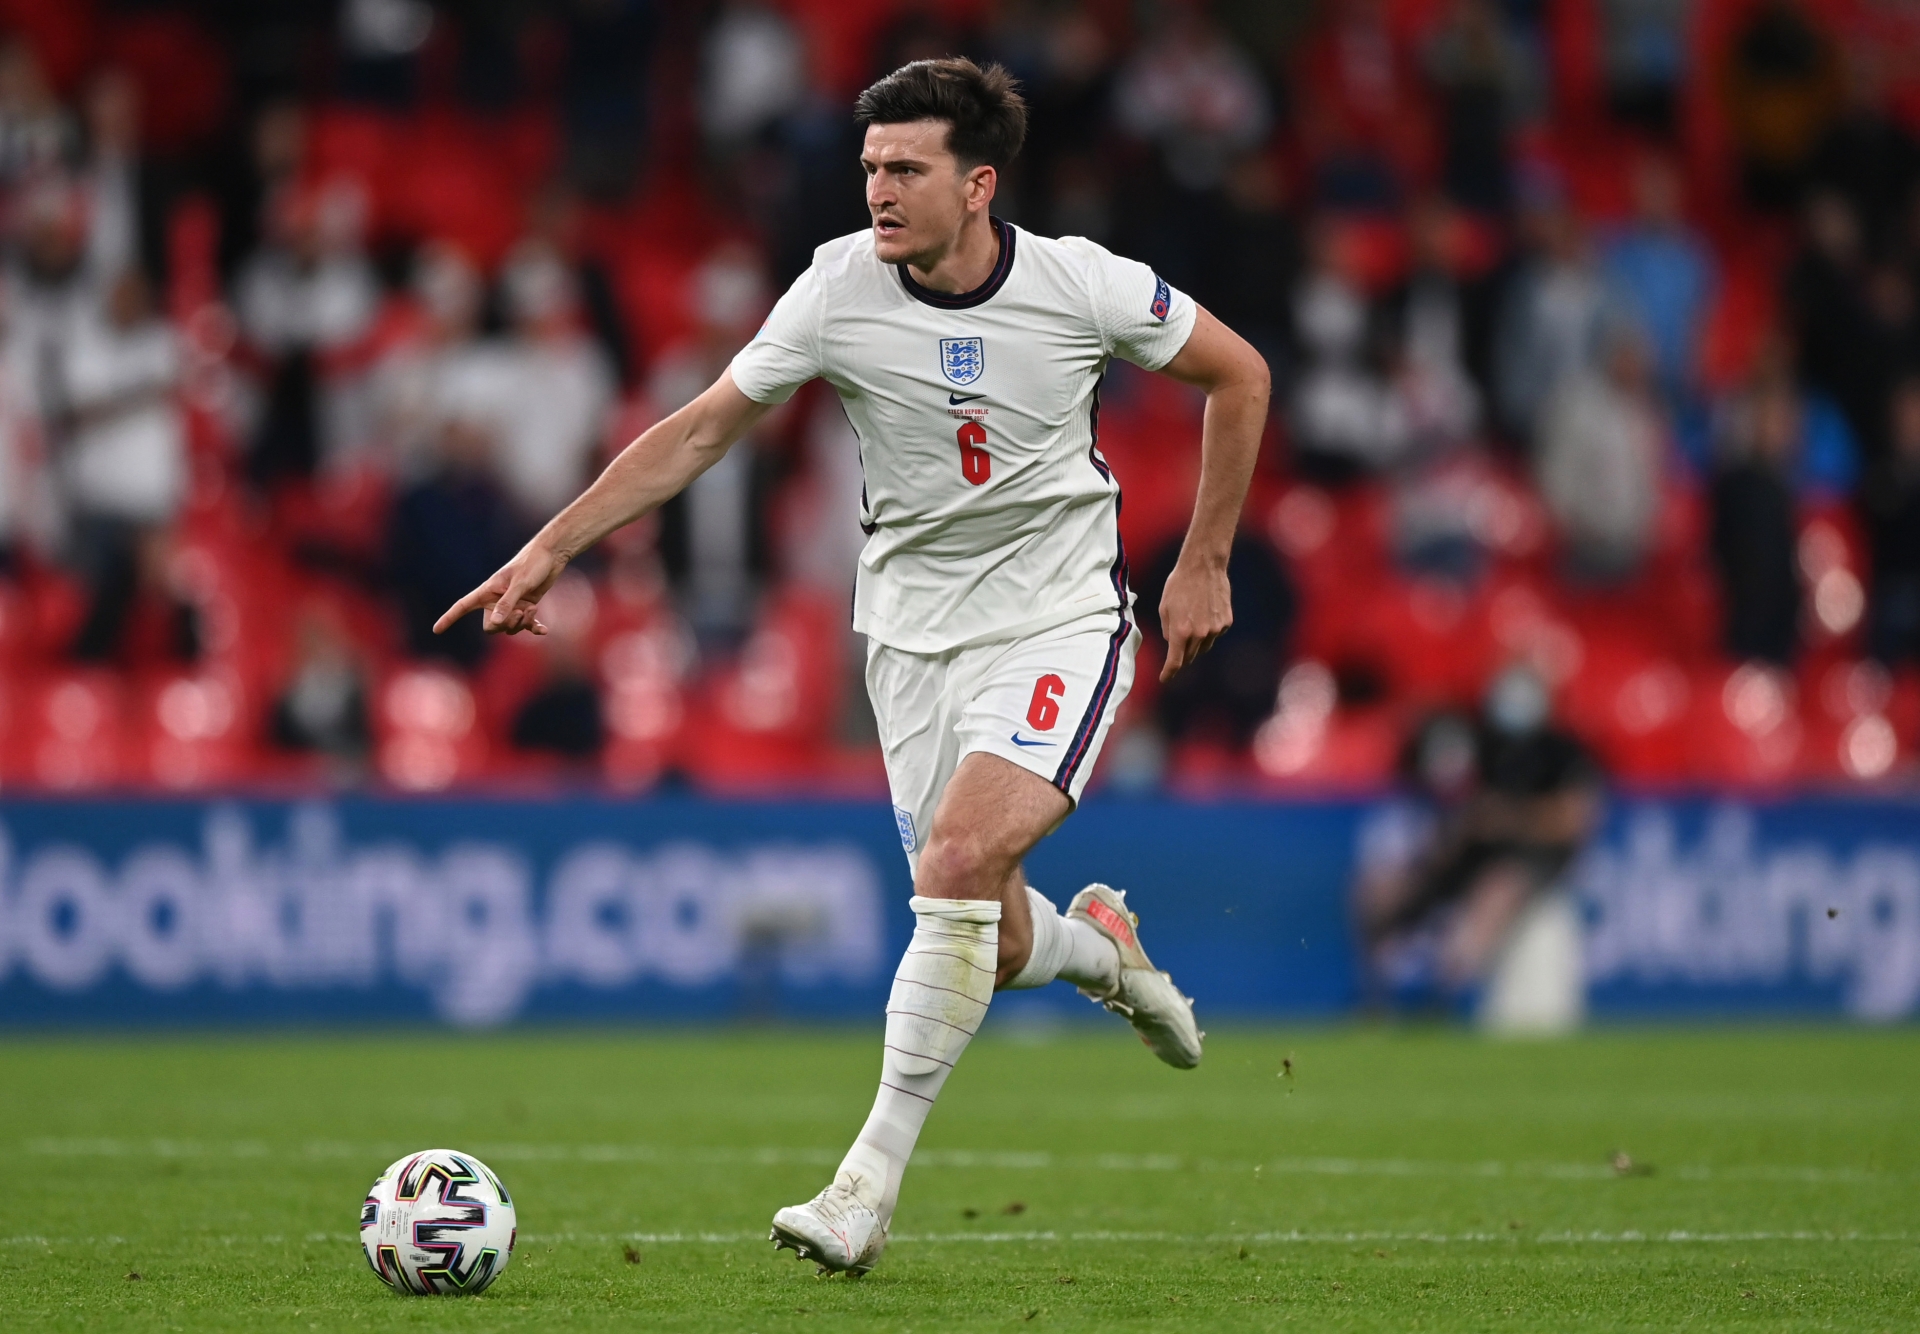 Kết quả EURO 2020: Anh 1-0 Czech, Harry Kane tiếp tục tàng hình - Ảnh 1